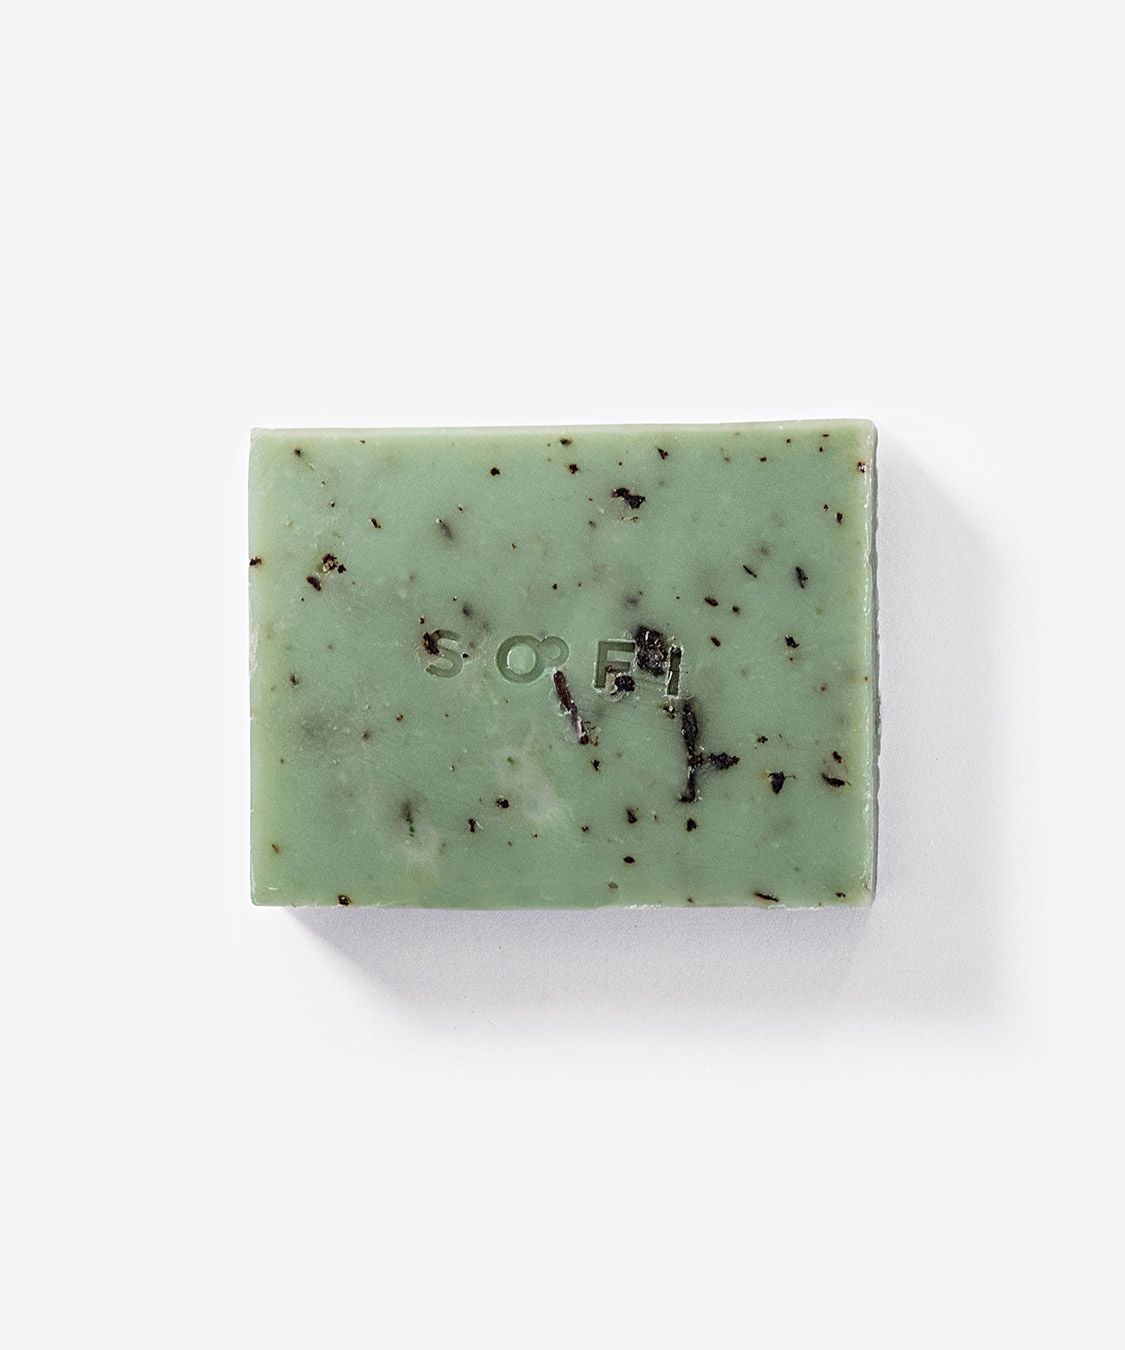 Body soap bar — aloe vera + shea butter